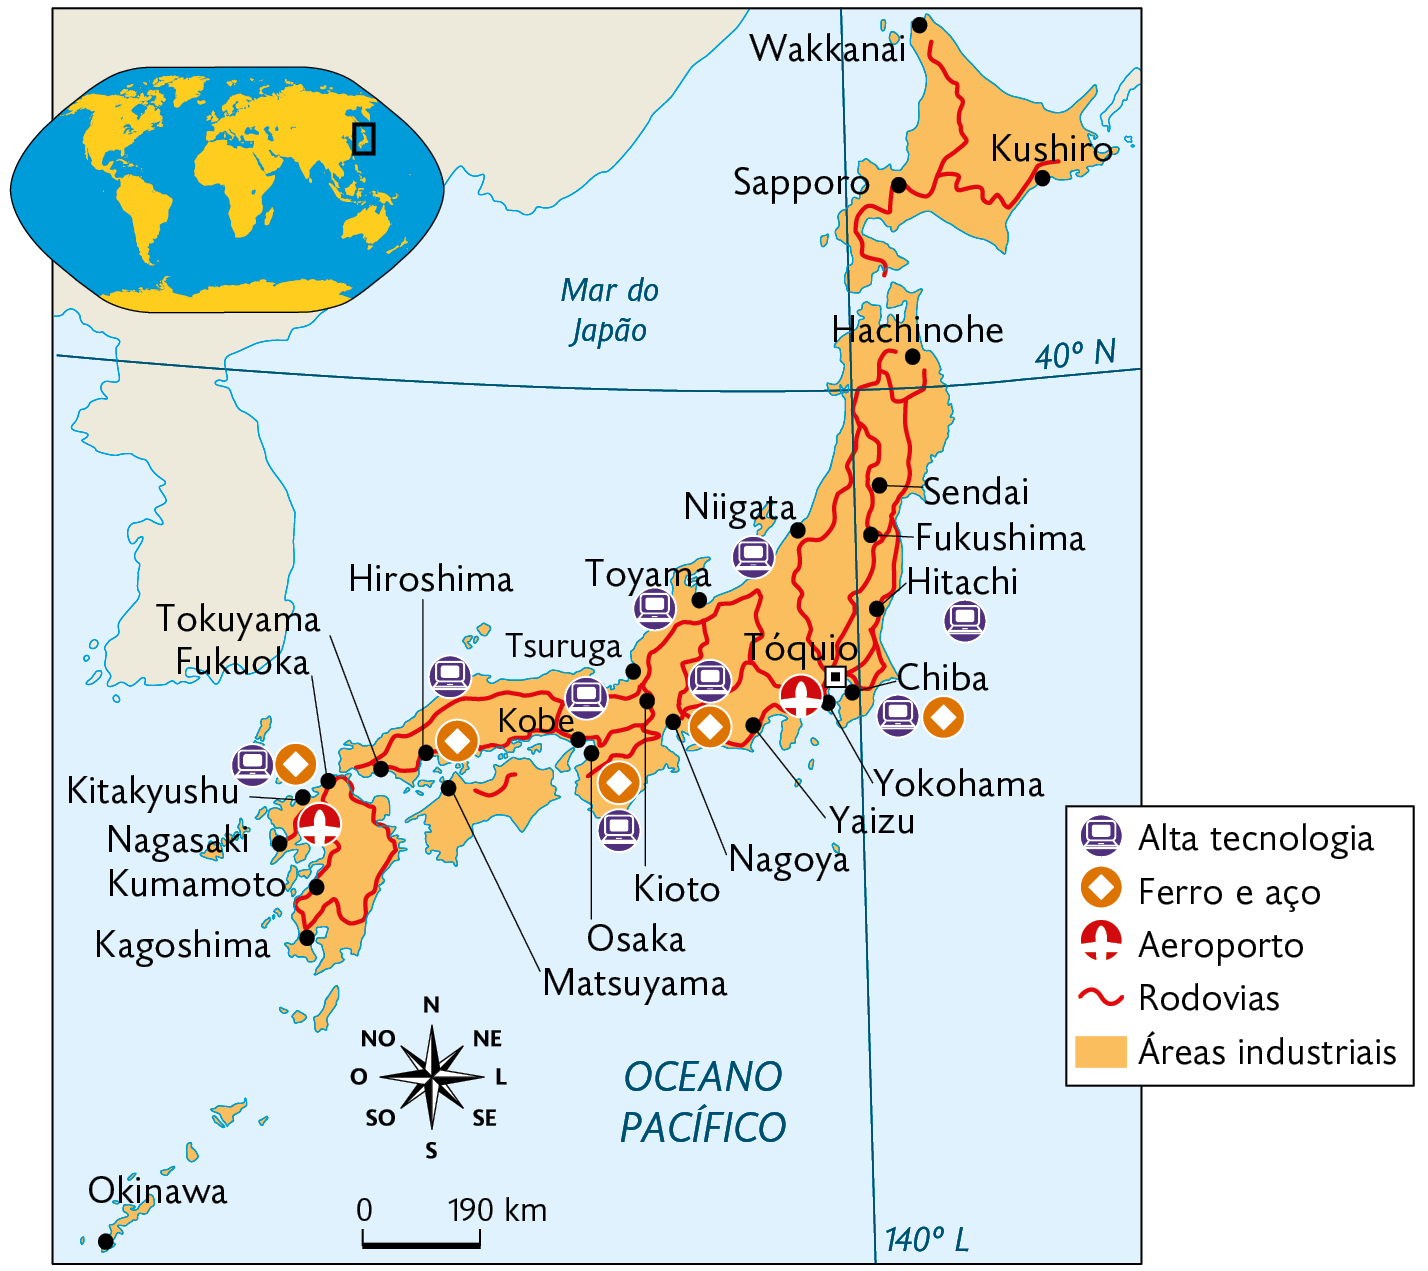 Mapa. Indústrias e recursos minerais no Japão (2021). Áreas industriais ocupam todo o território, com as cidades: Wakkanai, Kushiro, Sapporo, Hachinohe, Sendai, Fukushima, Hitachi, Niigata, Toyama, Tóquio, Chiba, Tsuruga, Kioto, Nagoya, Yokohama, Kobe, Osaka, Matsuyama, Hiroshima, Tokuyama, Fukuoka, Kitakyushu, Nagasaki, Kumamoto, Kagoshima, Okinawa, com Alta tecnologia. Ferro e aço e Aeroportos espalhados pelo território e Rodovias por toda área. No canto superior esquerdo, mapa de localização, planisfério, destacando a região descrita. Na parte inferior, a rosa dos ventos e a escala: 190 quilômetros por centímetro.